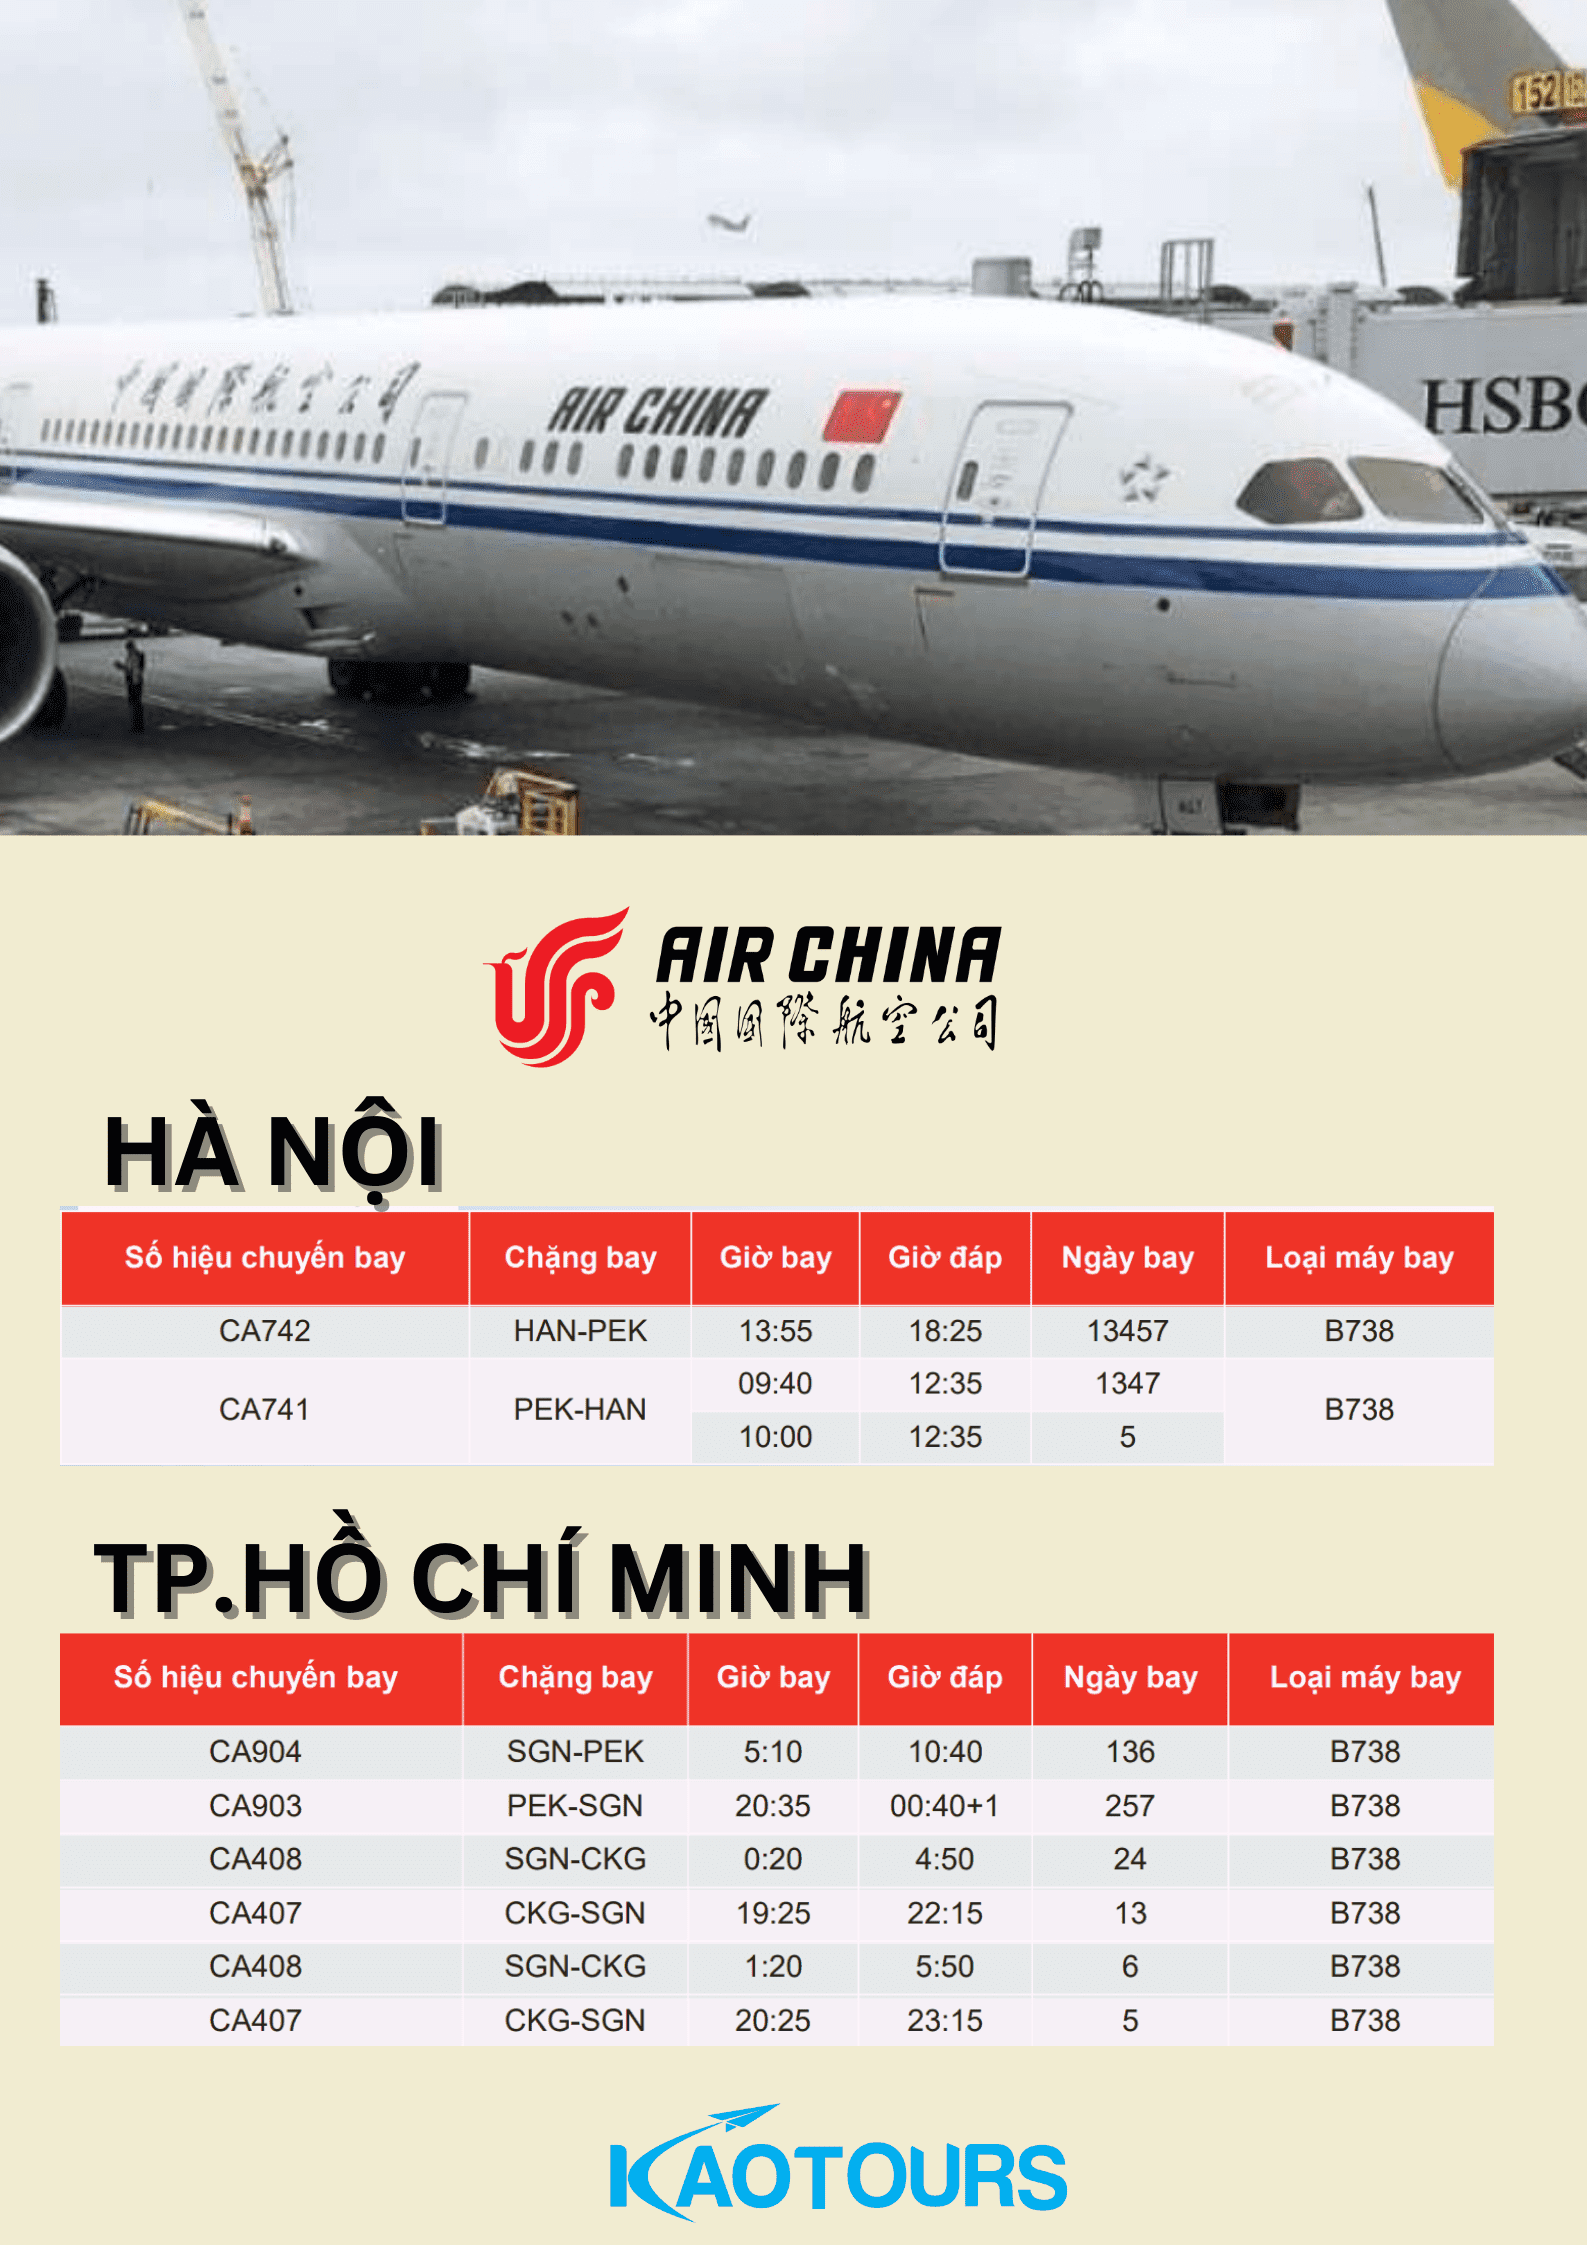 Tìm hiểu về các hãng hàng không Trung Quốc - Air China (CA)